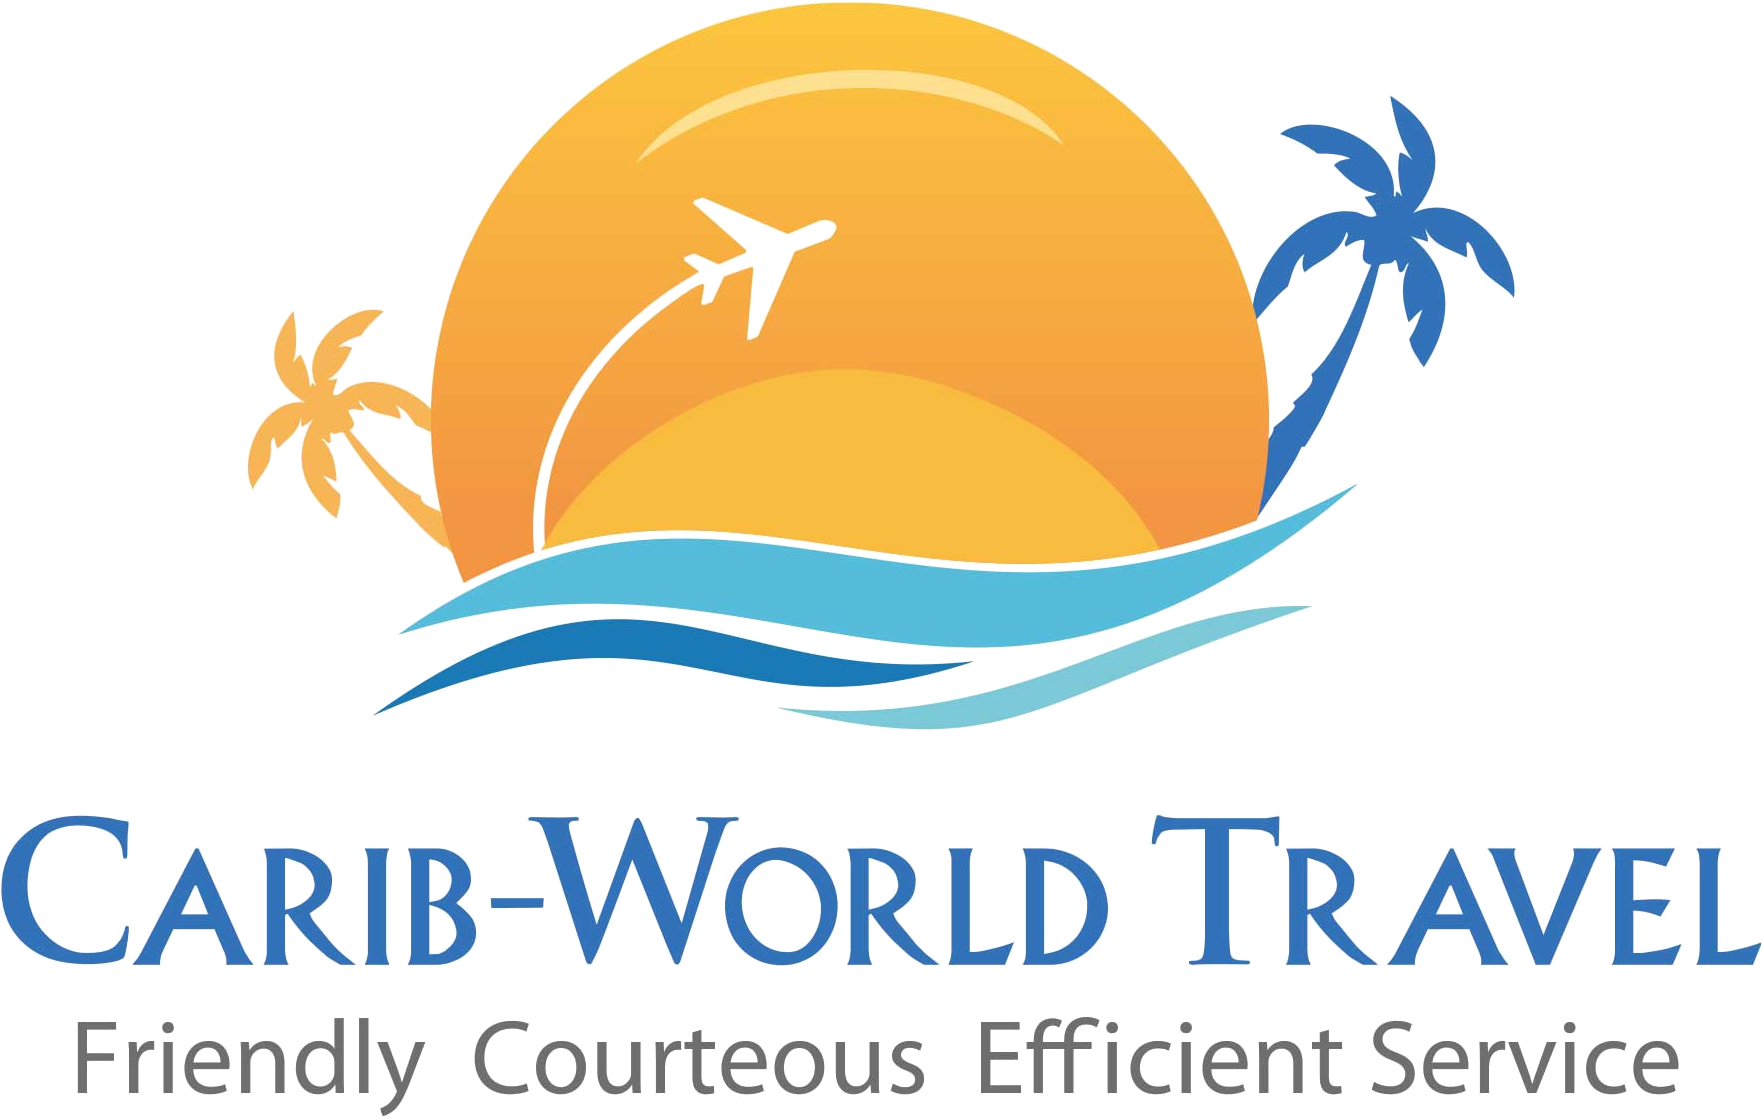 Хоум тревел. Логотип путешествия. Тревел логотип. Логотип туристической компании. Логотип турагентства.